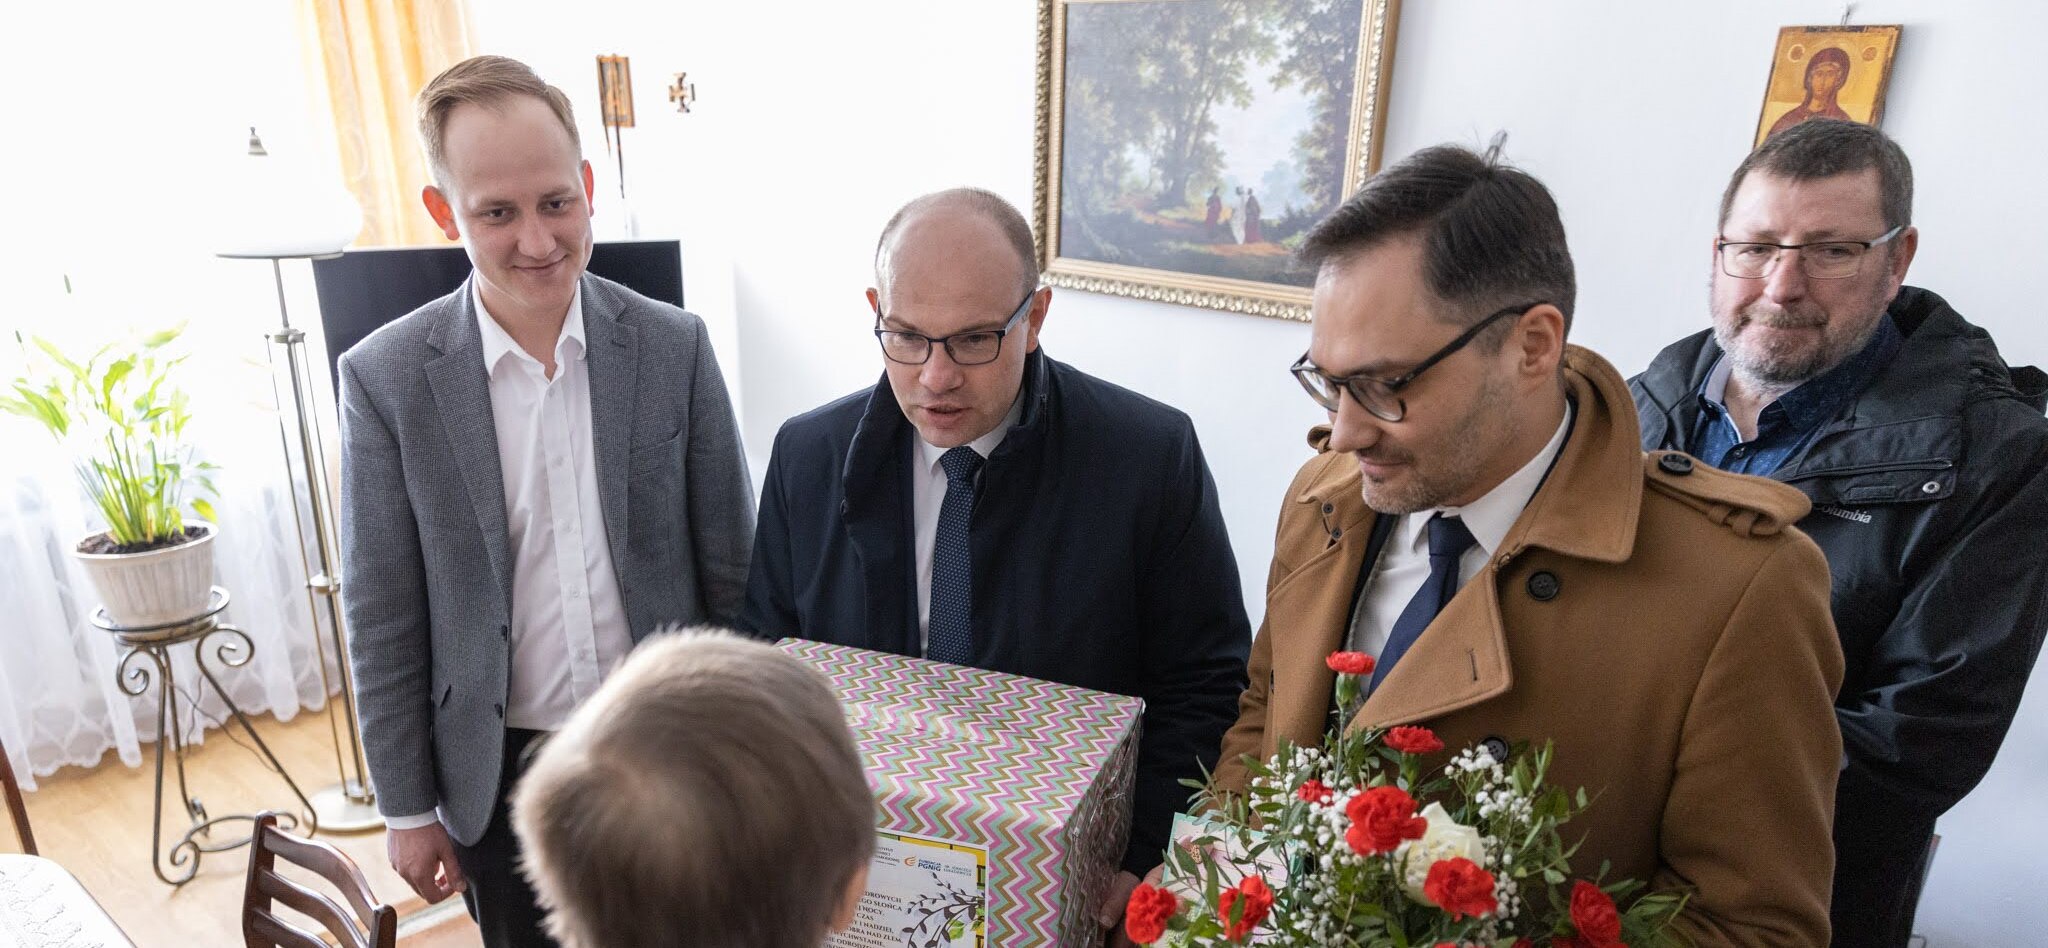 Czterej mężczyźni z prezentami i kwiatami stoją przed starszą kobieta.